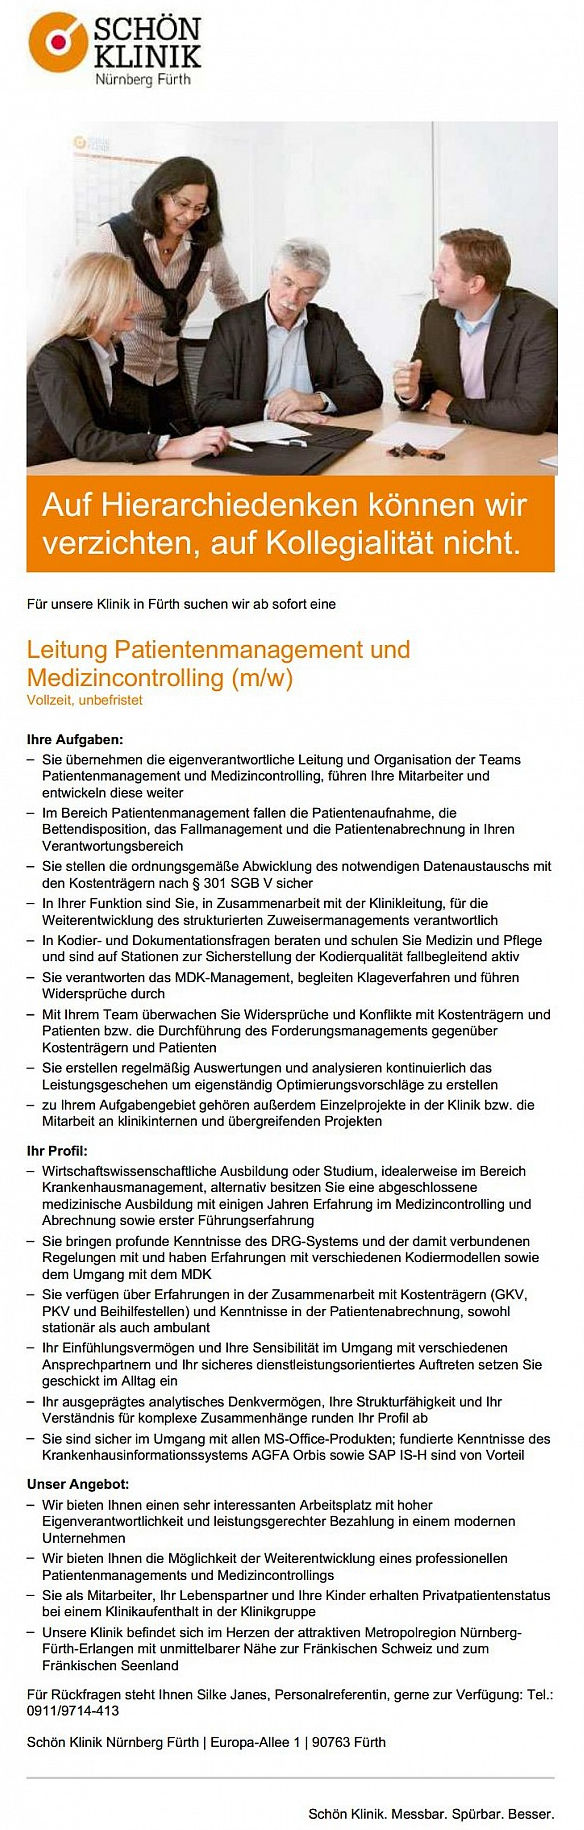 Schön Klinik Fürth: Leitung Patientenmanagement und Medizincontrolling (m/w)